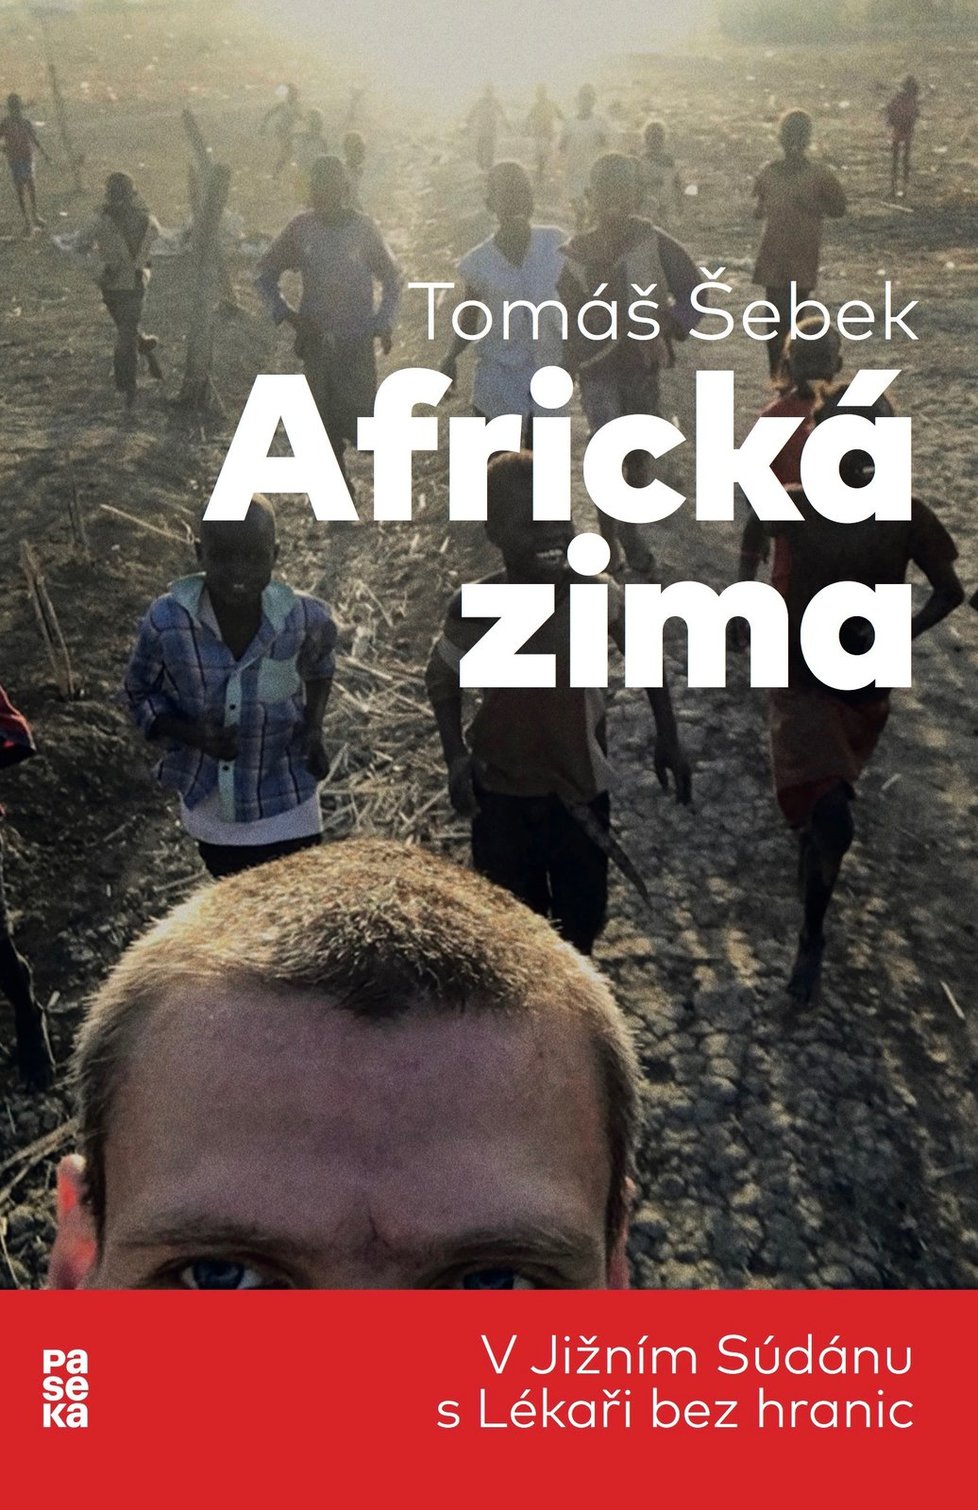 Tomáš Šebek: Africká zima/V Jižním Súdánu s Lékaři bez hranic